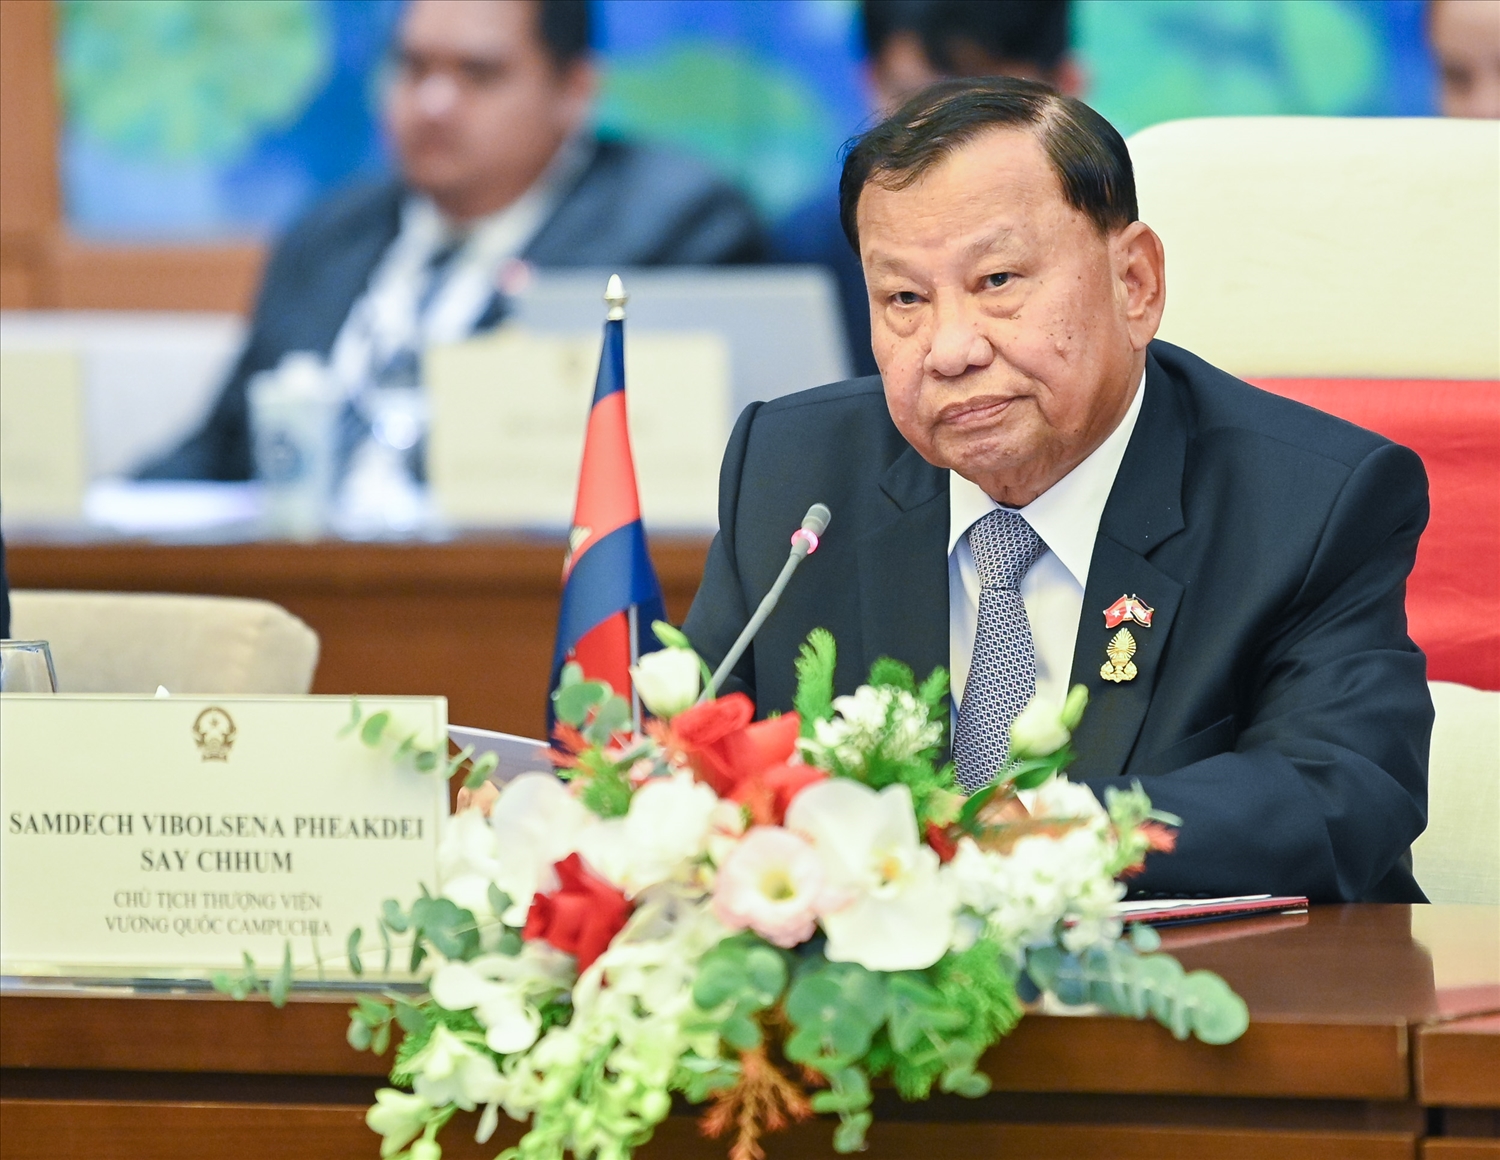 Chủ tịch Thượng viện Vương quốc Campuchia Samdech Say Chhum 